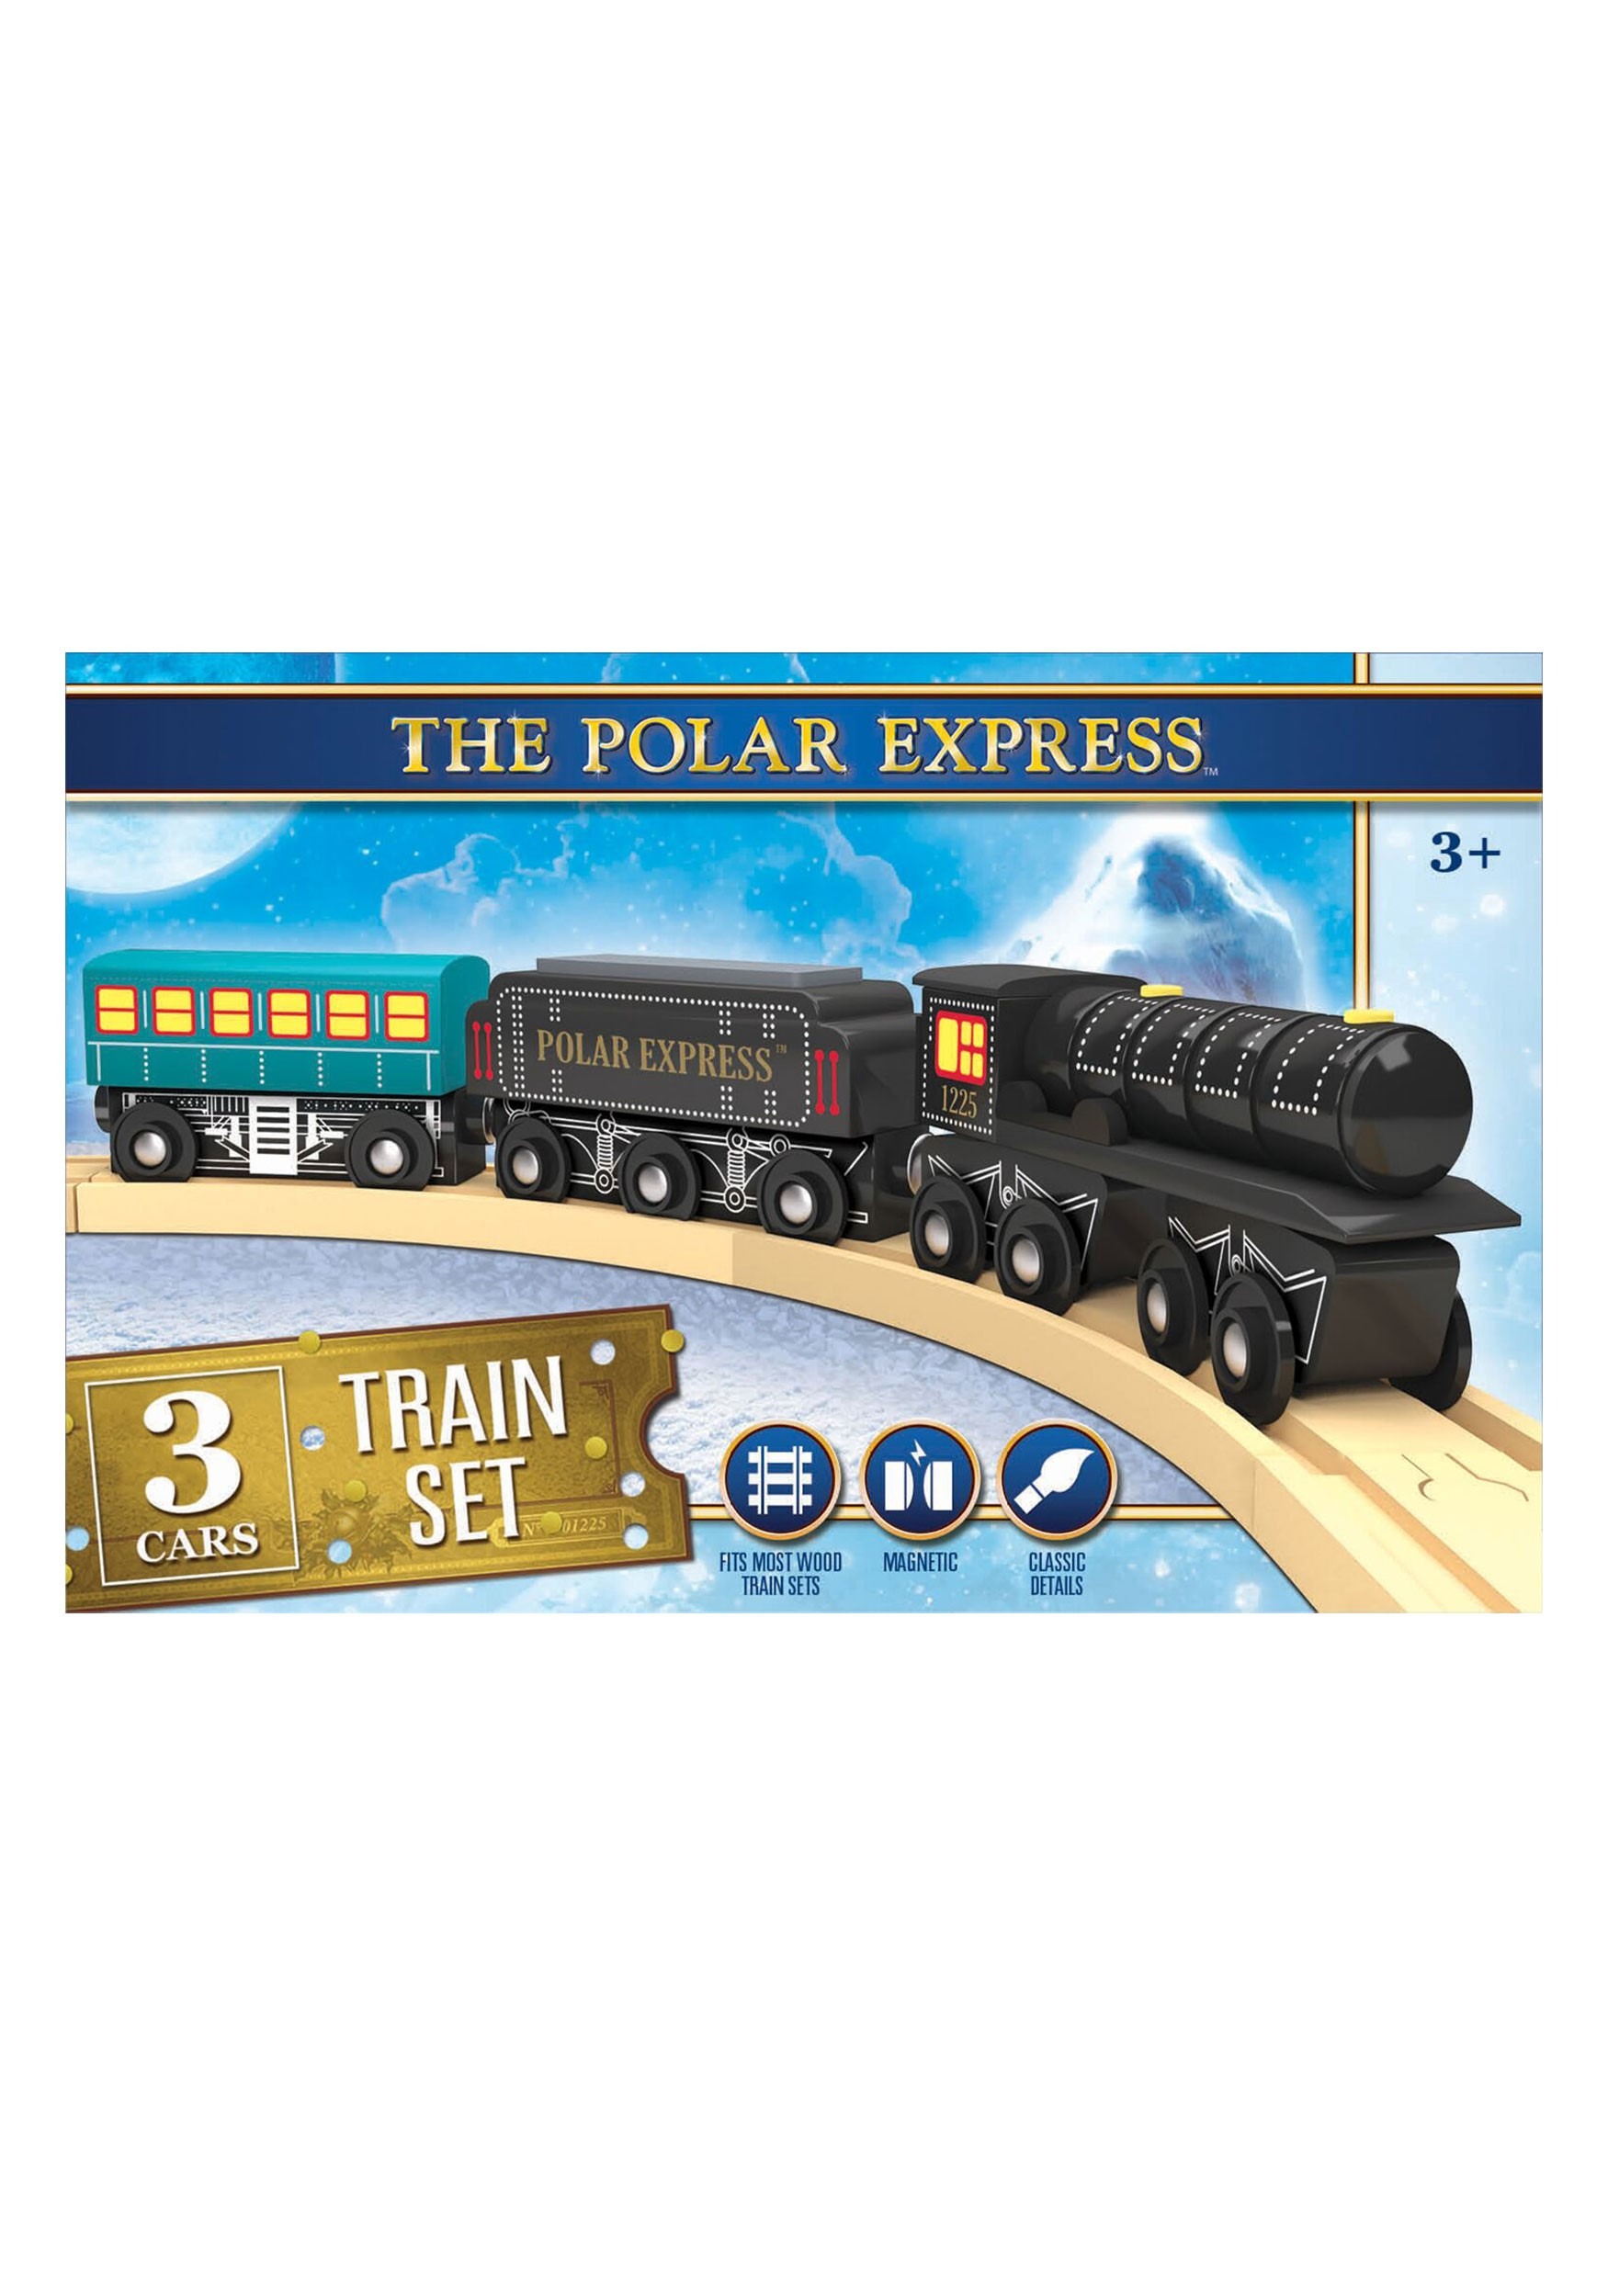 the polar express toy train set